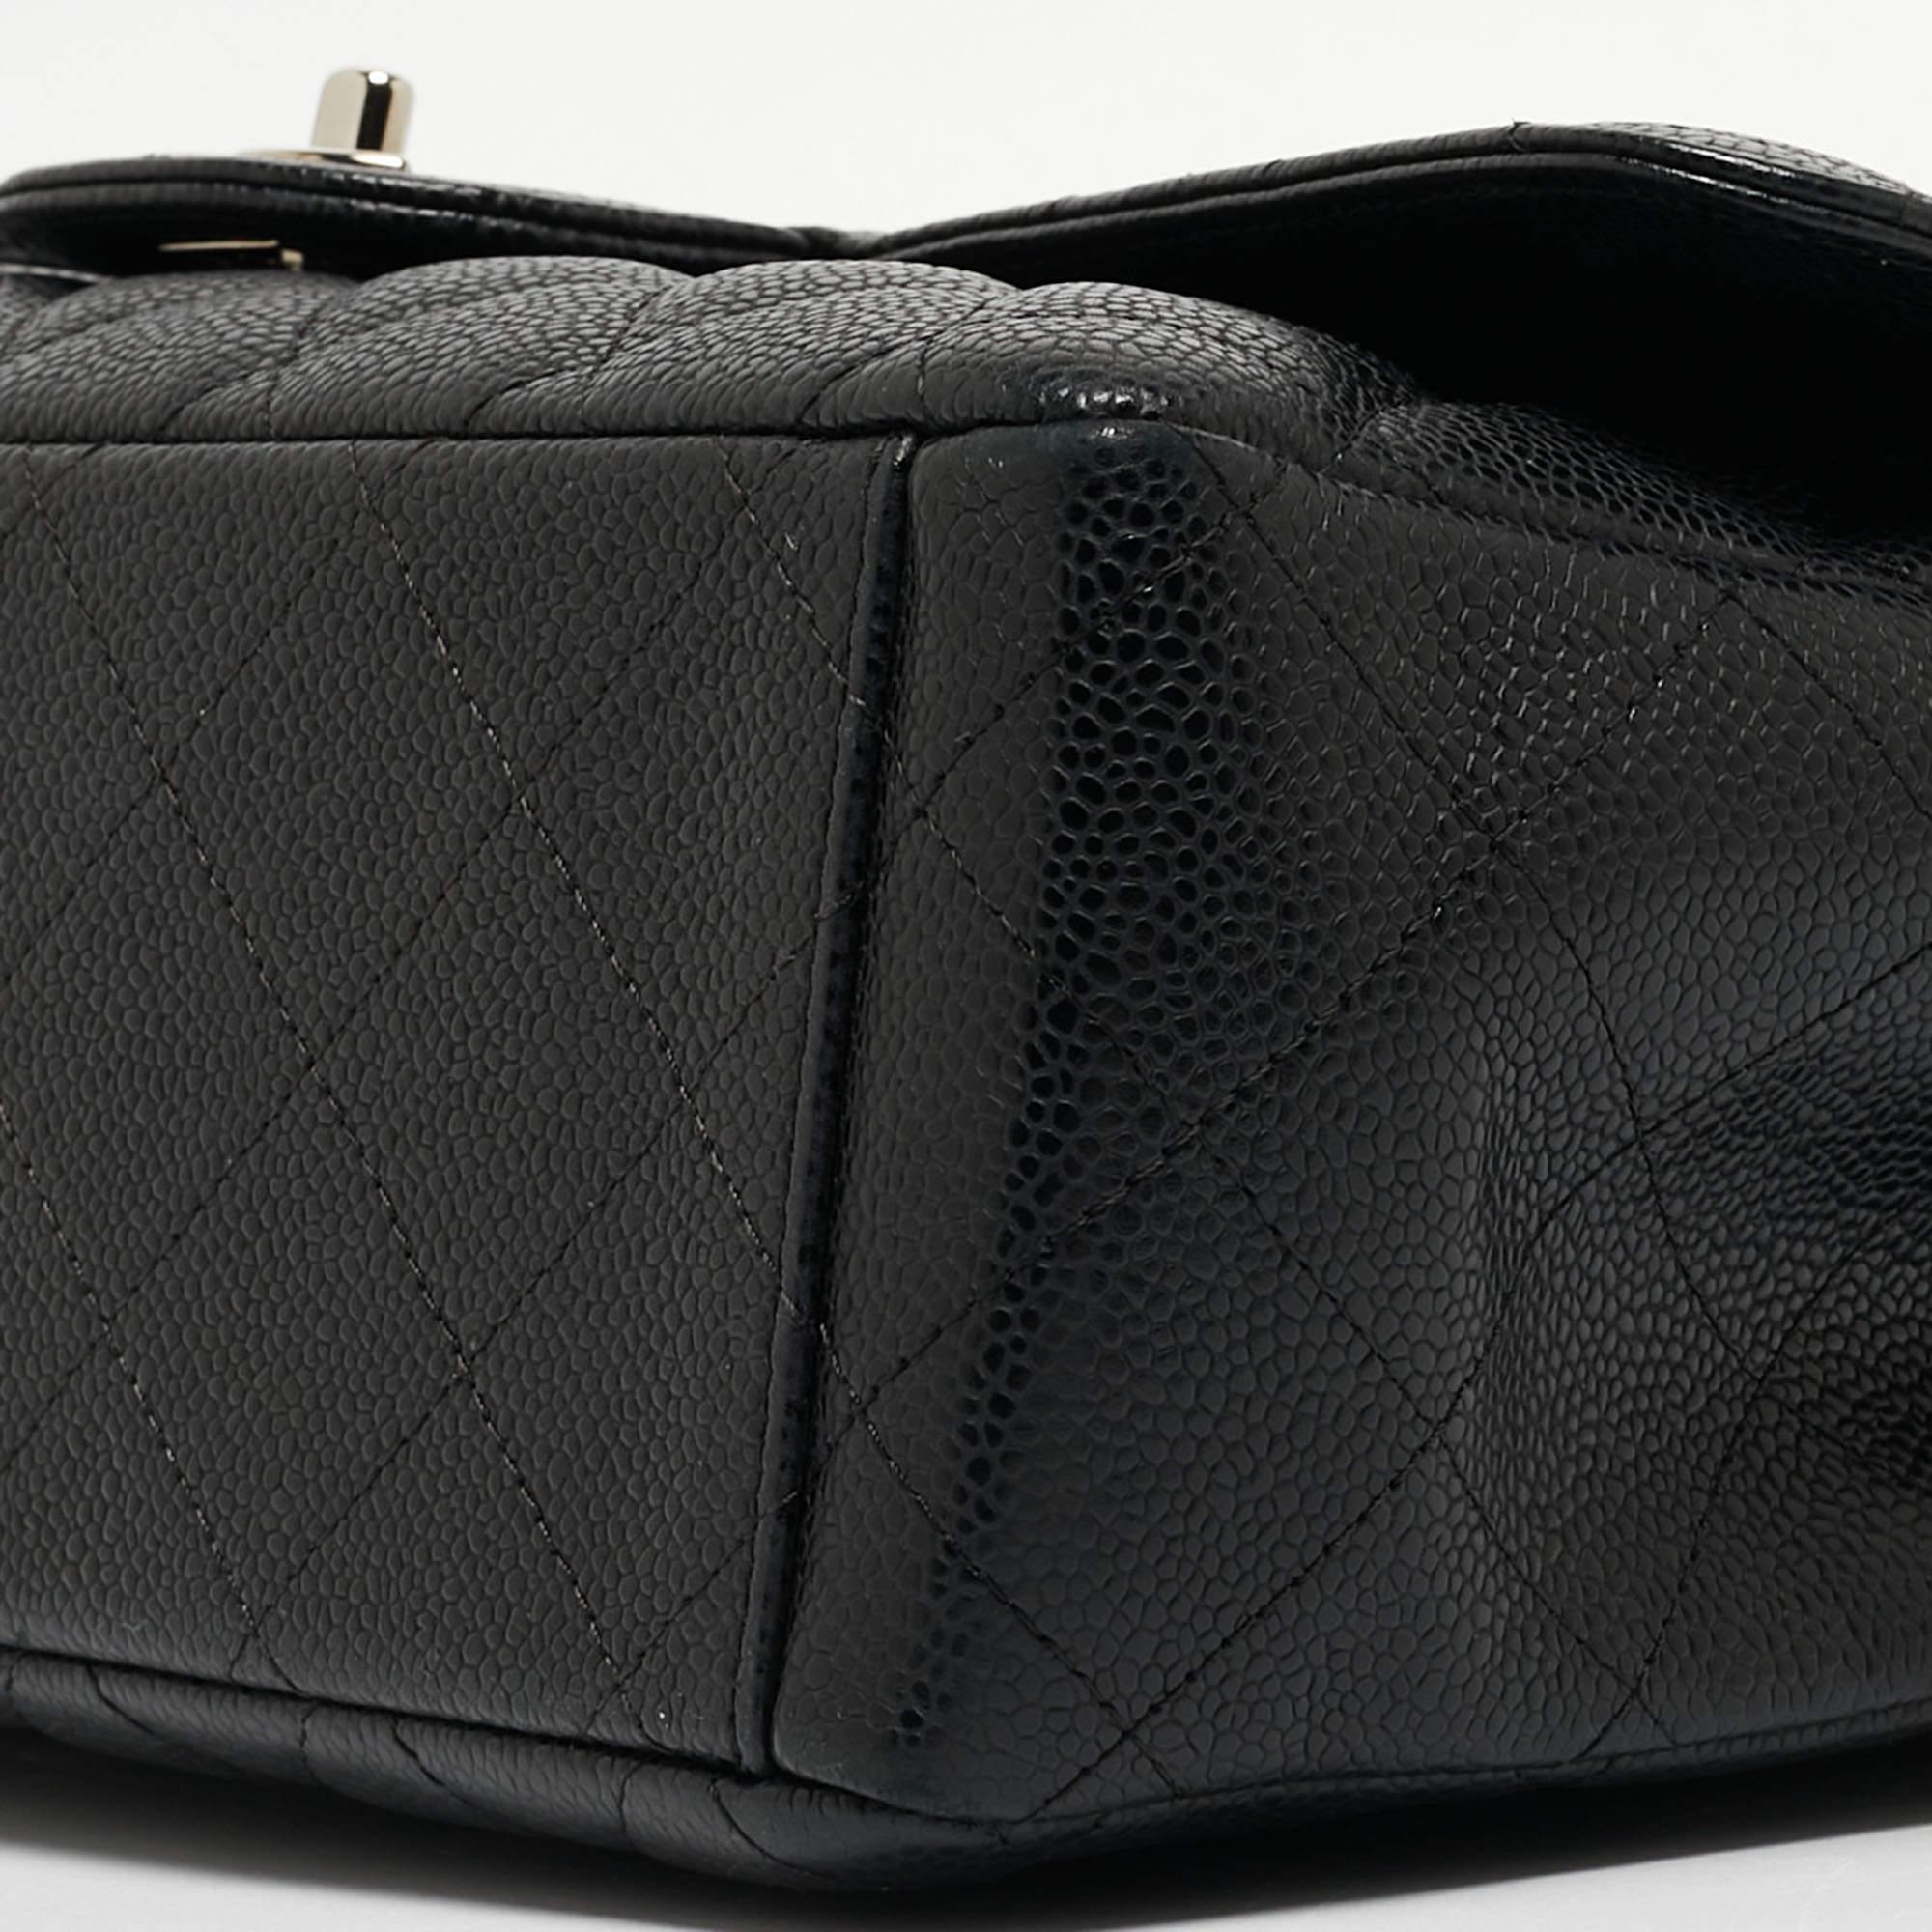 Chanel - Sac à double rabat classique Maxi en cuir texturé noir matelassé 2